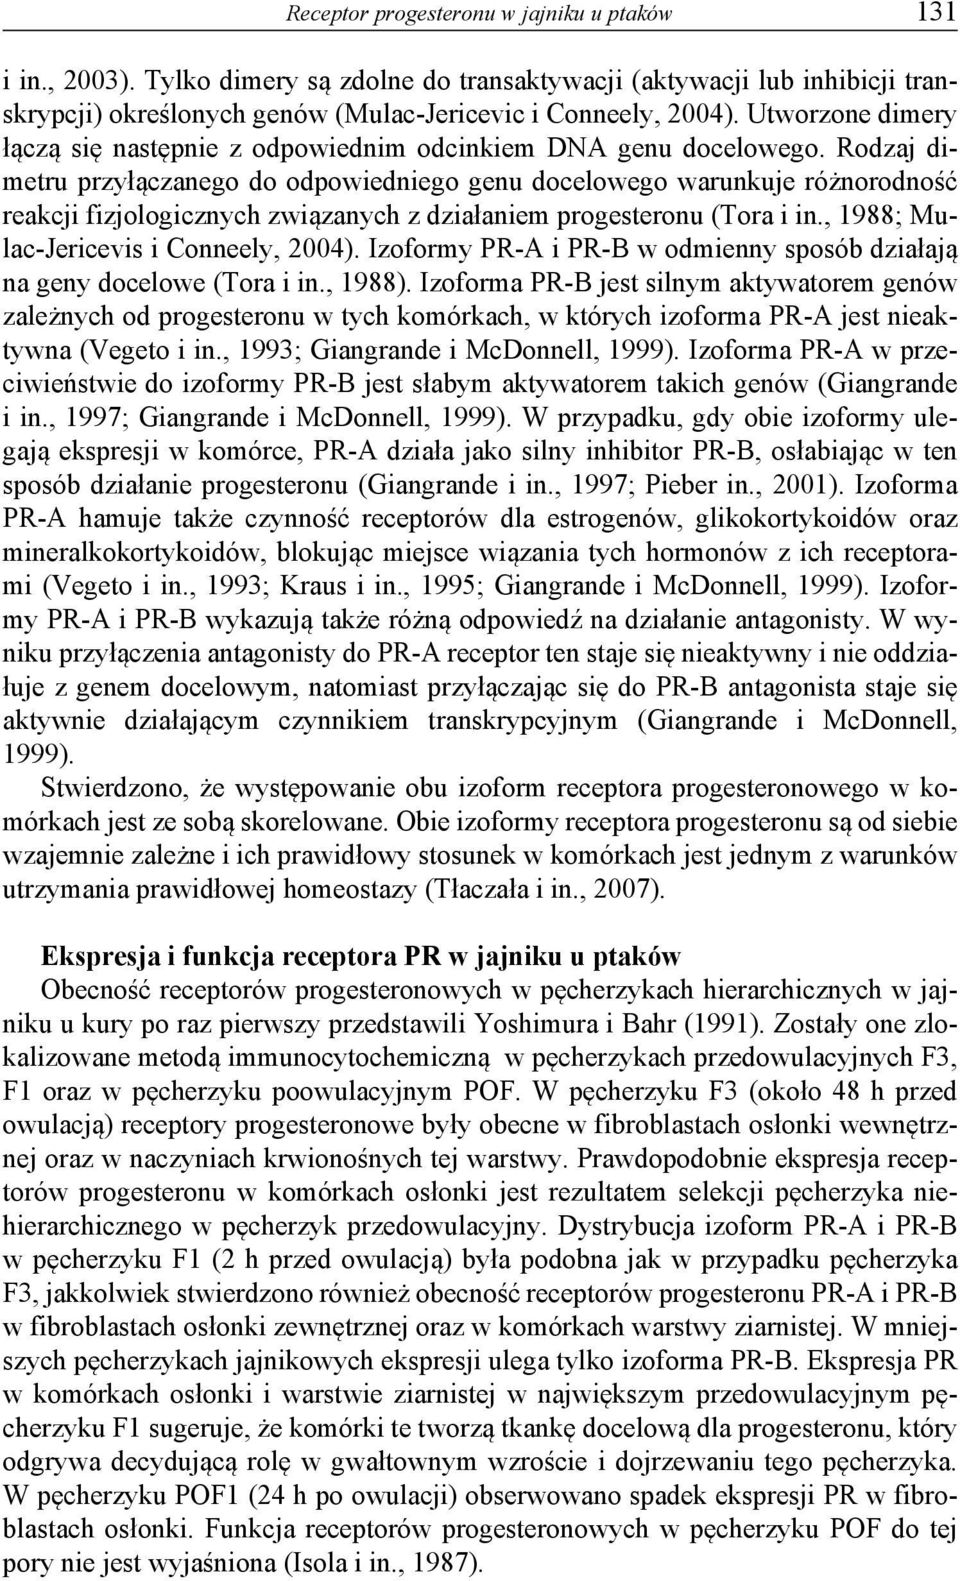 Rodzaj dimetru przyłączanego do odpowiedniego genu docelowego warunkuje różnorodność reakcji fizjologicznych związanych z działaniem progesteronu (Tora i in., 1988; Mulac-Jericevis i Conneely, 2004).